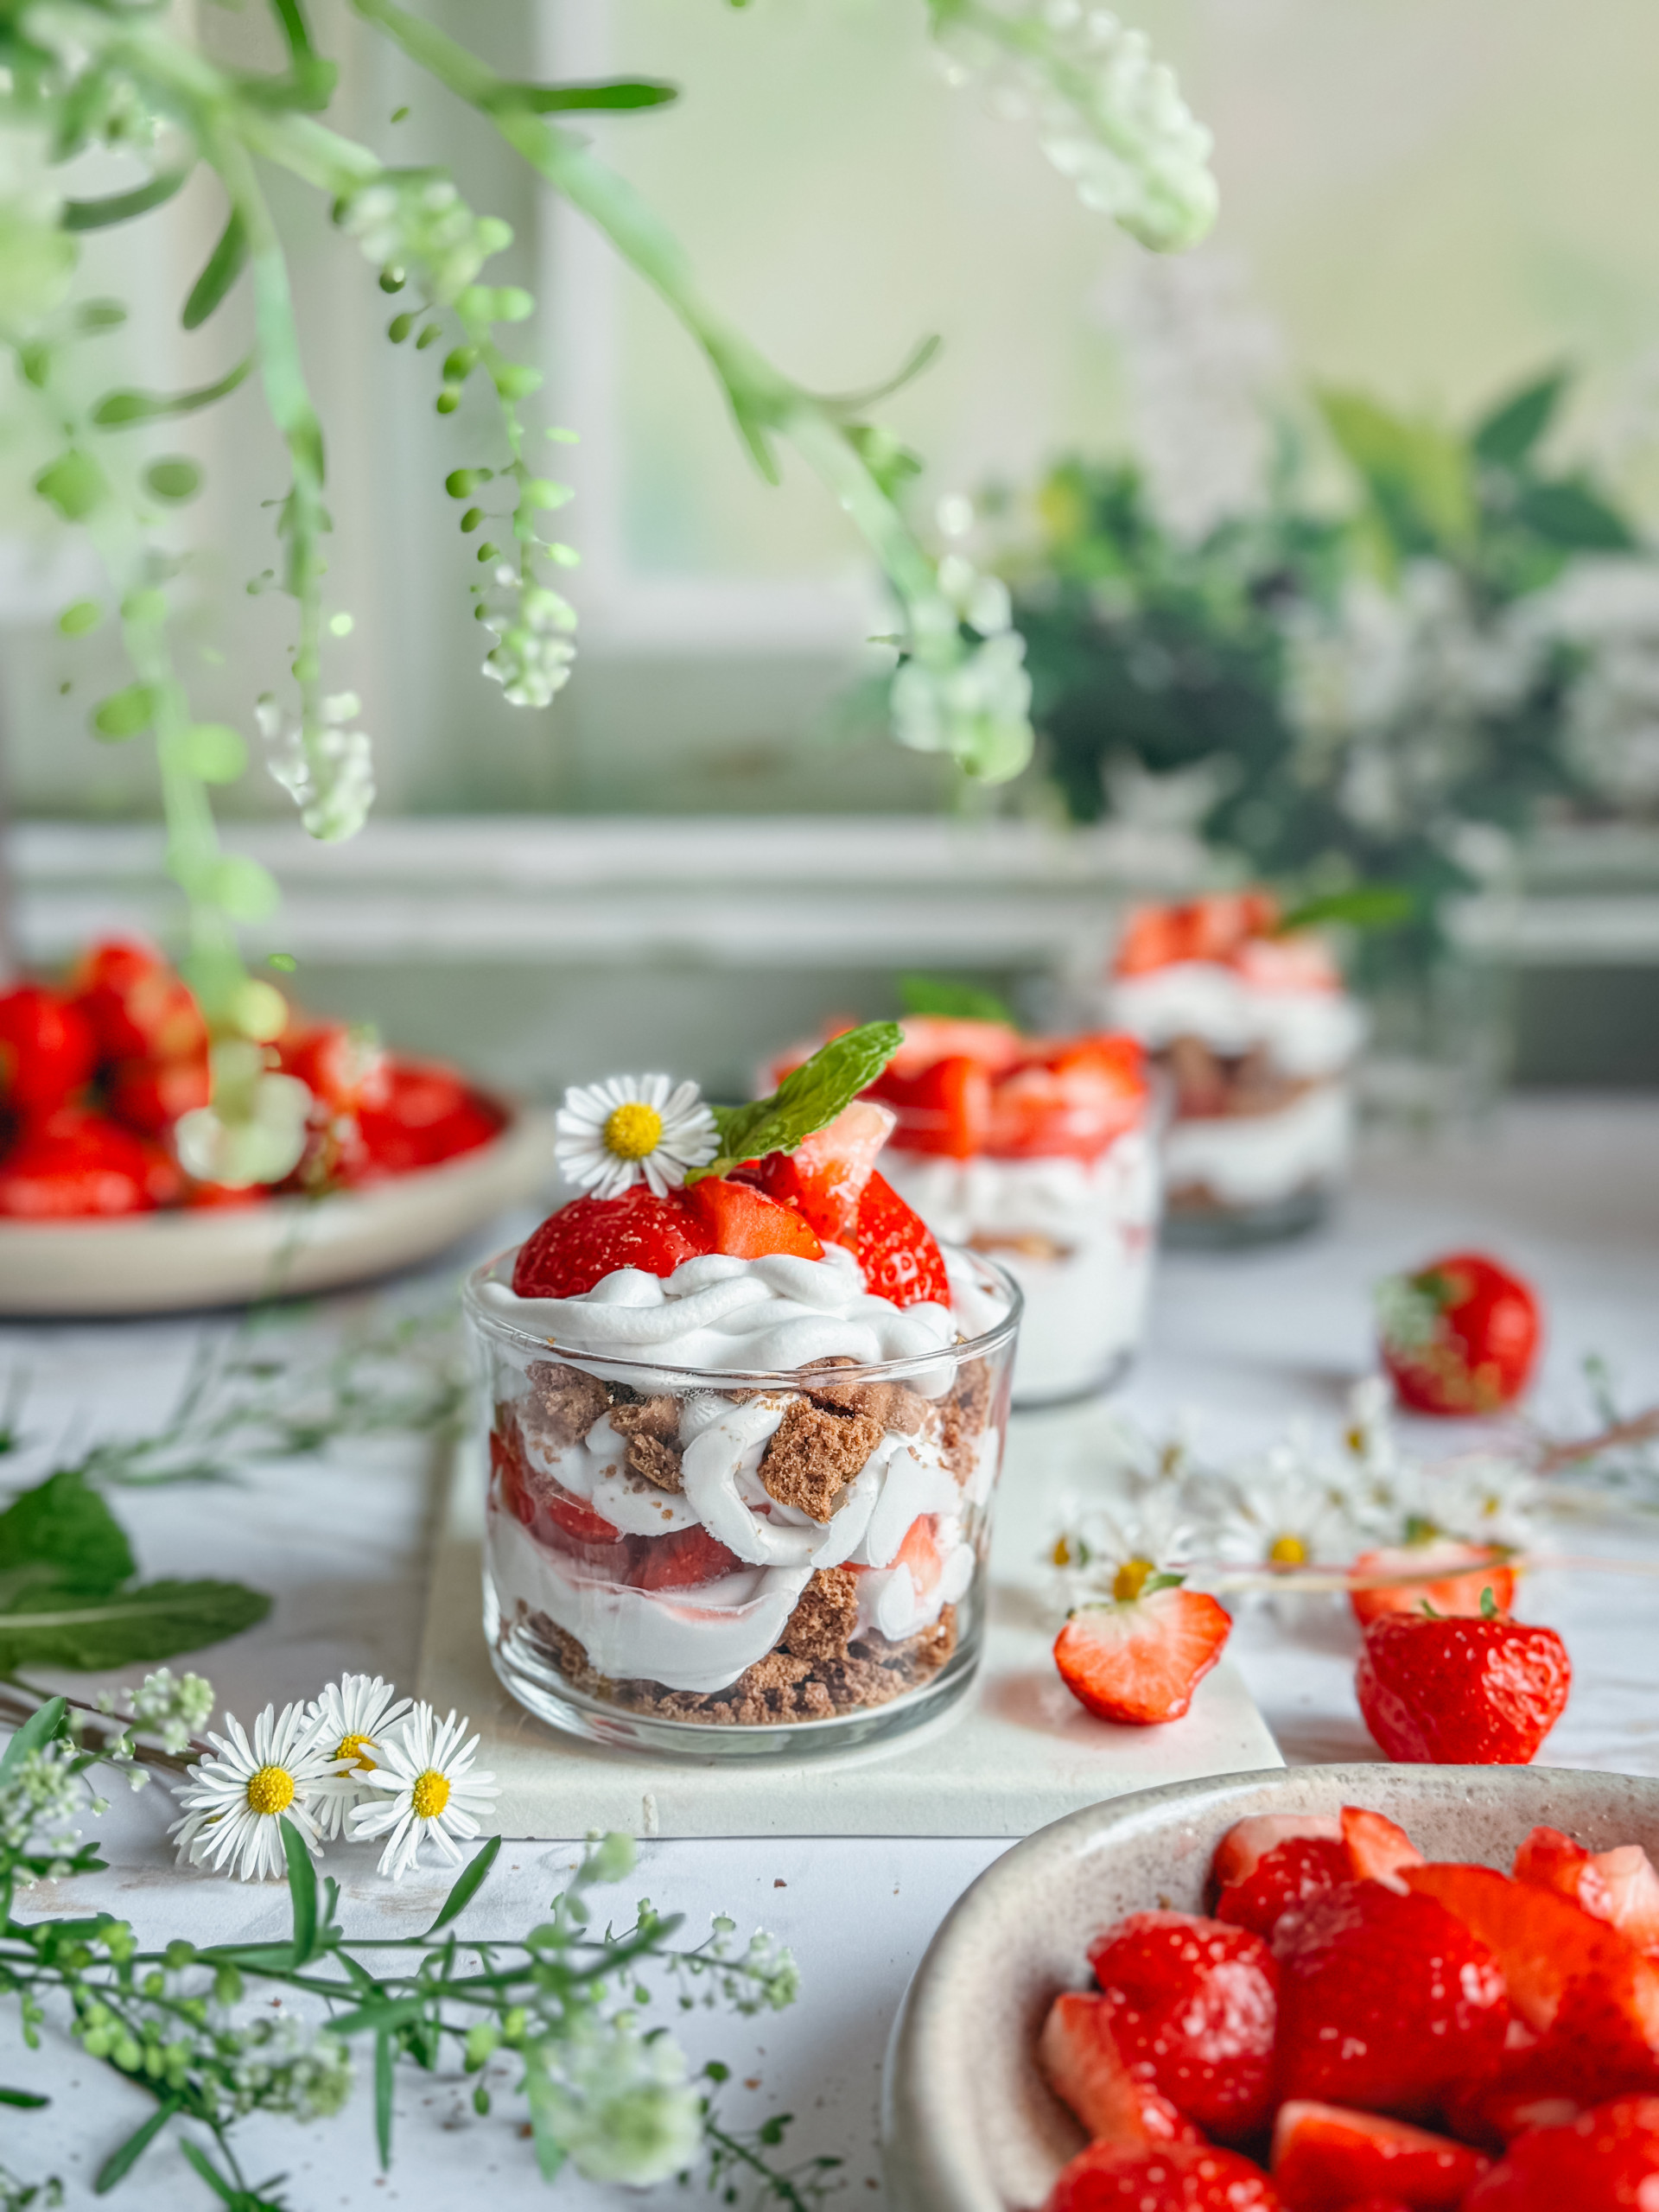 Ceci est une photo de tiramisu aux fraises sans gluten